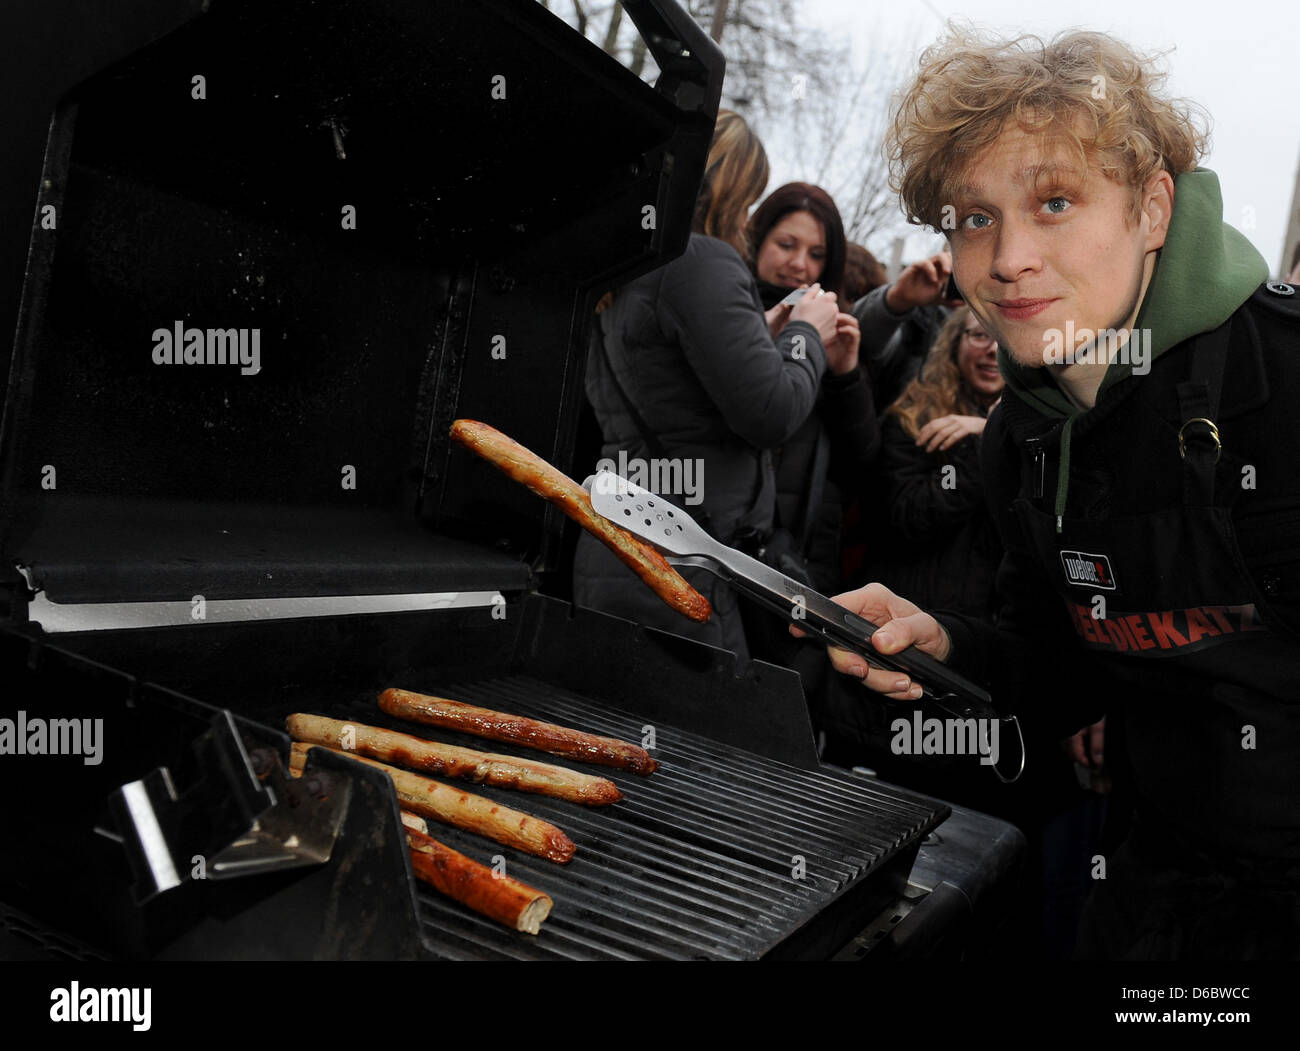 L'attore Matthias Schweighoefer pone accanto a un grill a Berlino, Germania, 01 gennaio 2012. Grazie al successo della sua recentemente in onda film 'RUBBELDIEKATZ' Schweighoefer invitati per un nuovo anno di barbecue. Foto: Britta Pedersen Foto Stock